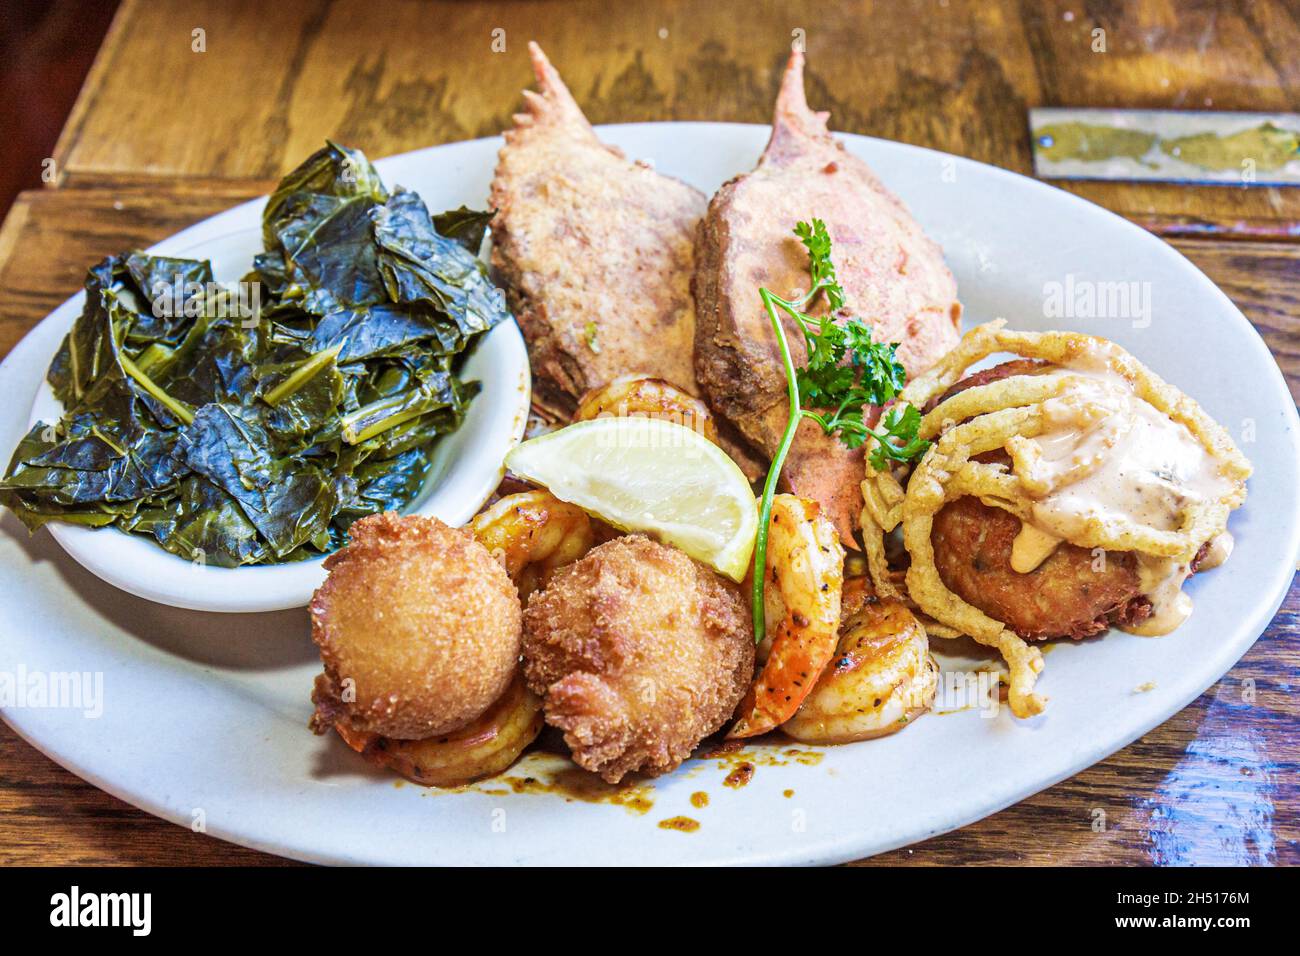 Charleston South Carolina, Meeting Street, restaurante Hyman's Seafood, comida, plato plato, cangrejo, hacha, cachorros, col, greens, camarones y sémola Foto de stock